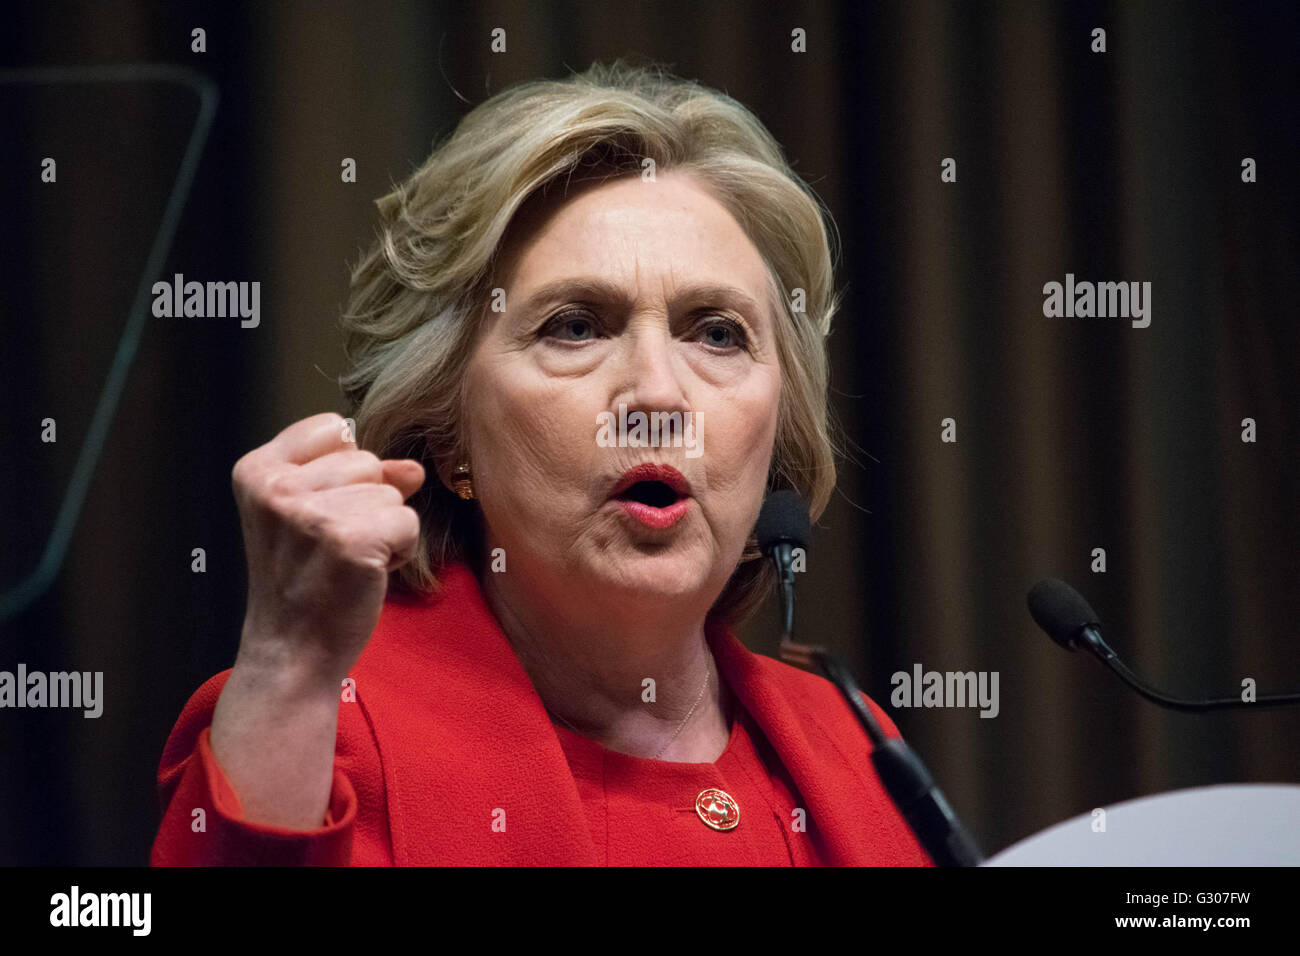 Hillary Clinton dans un costume rouge gestes tandis qu'elle livre un discours à la 25e convention nationale annuelle du Réseau d'action. Banque D'Images